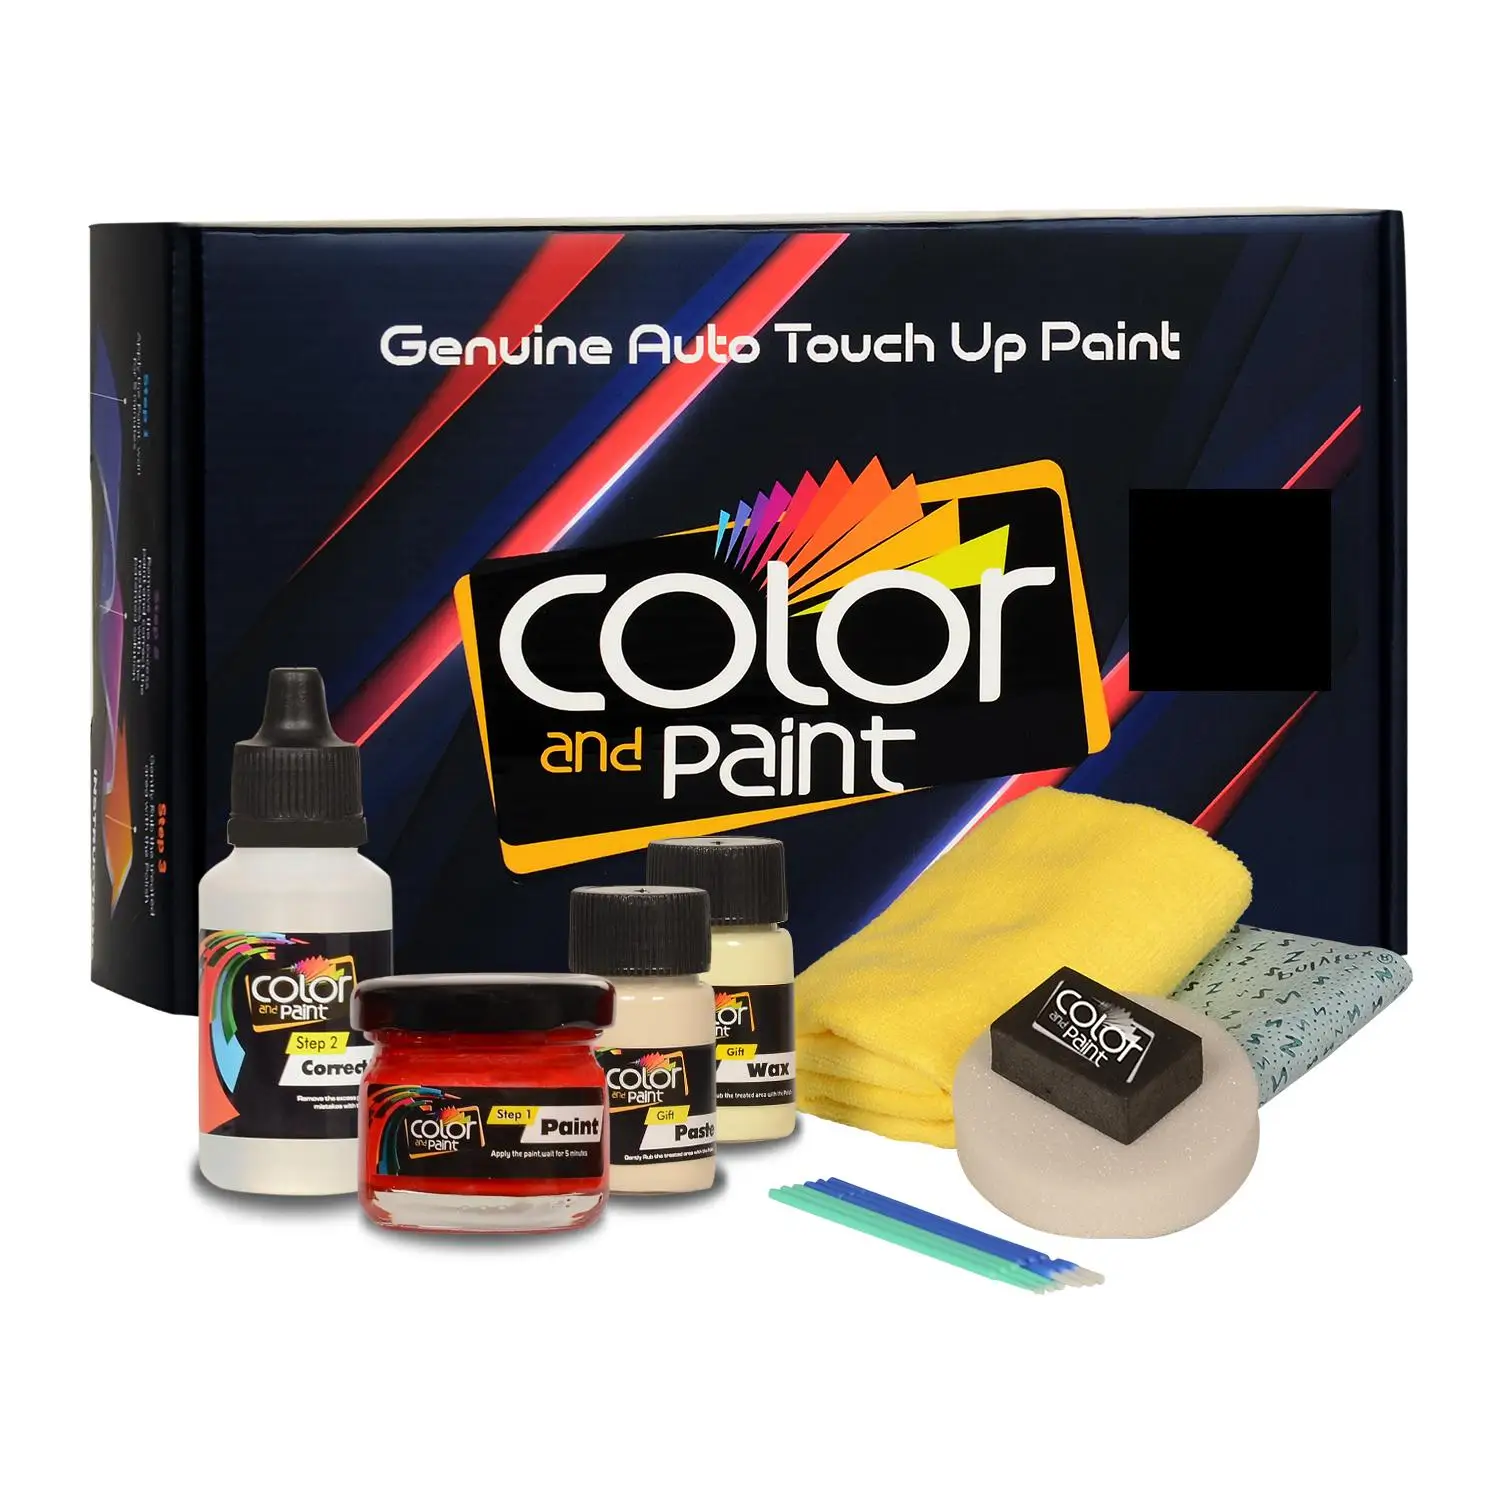 

Color and Paint compatible with Porsche Automotive Touch Up Paint-m9y-Basic Care